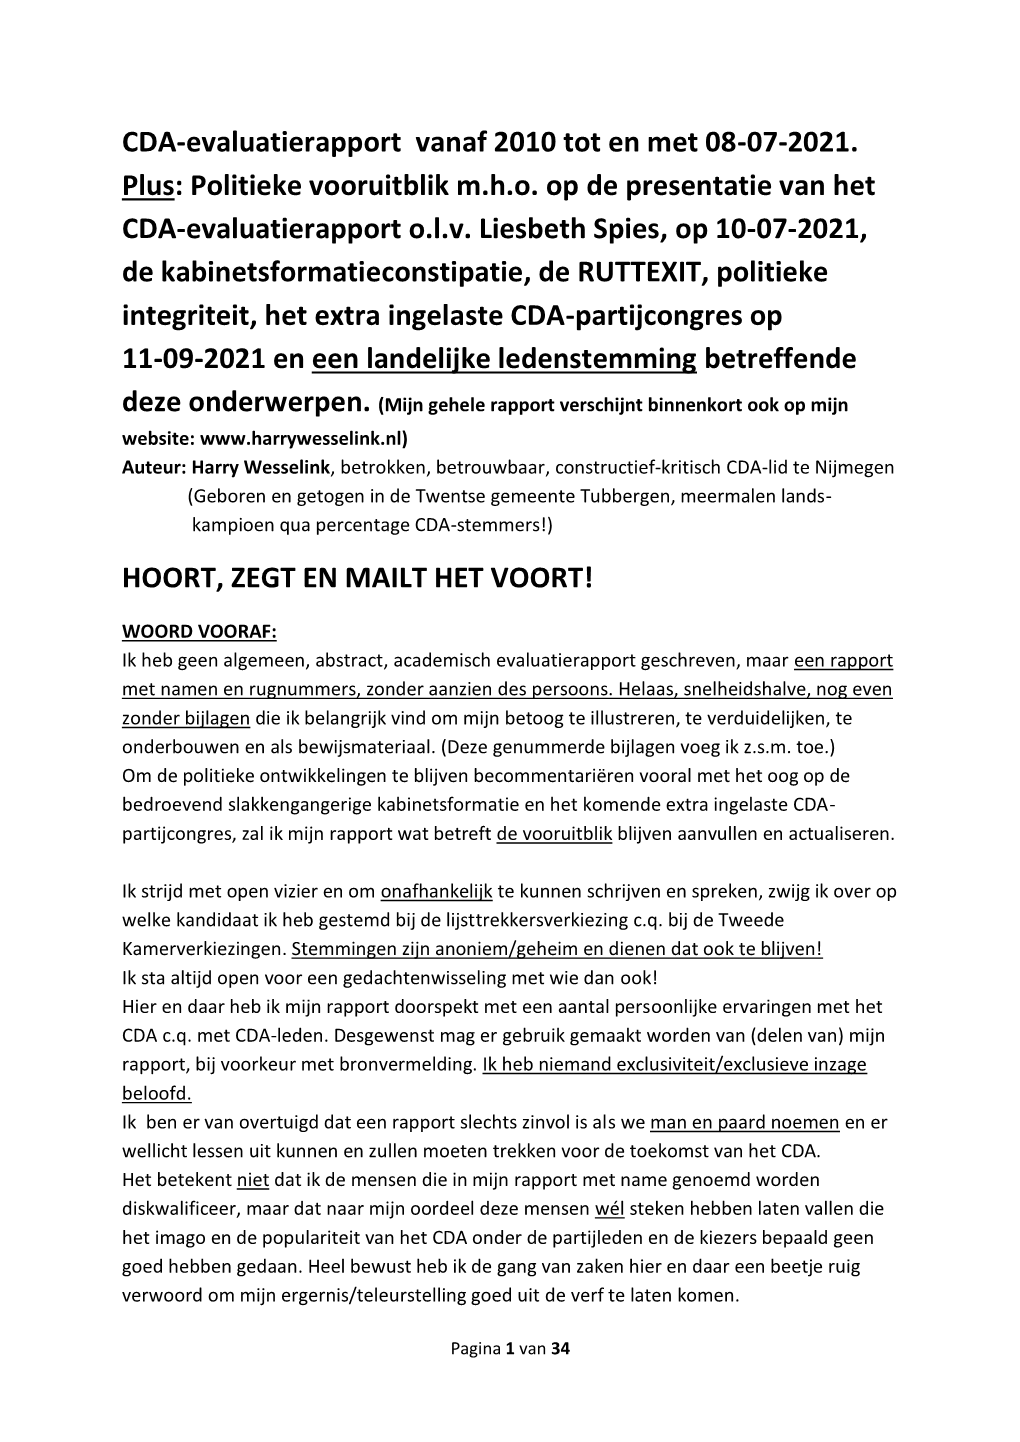 CDA-Evaluatierapport Vanaf 2010 Tot En Met 08-07-2021. Plus: Politieke Vooruitblik M.H.O